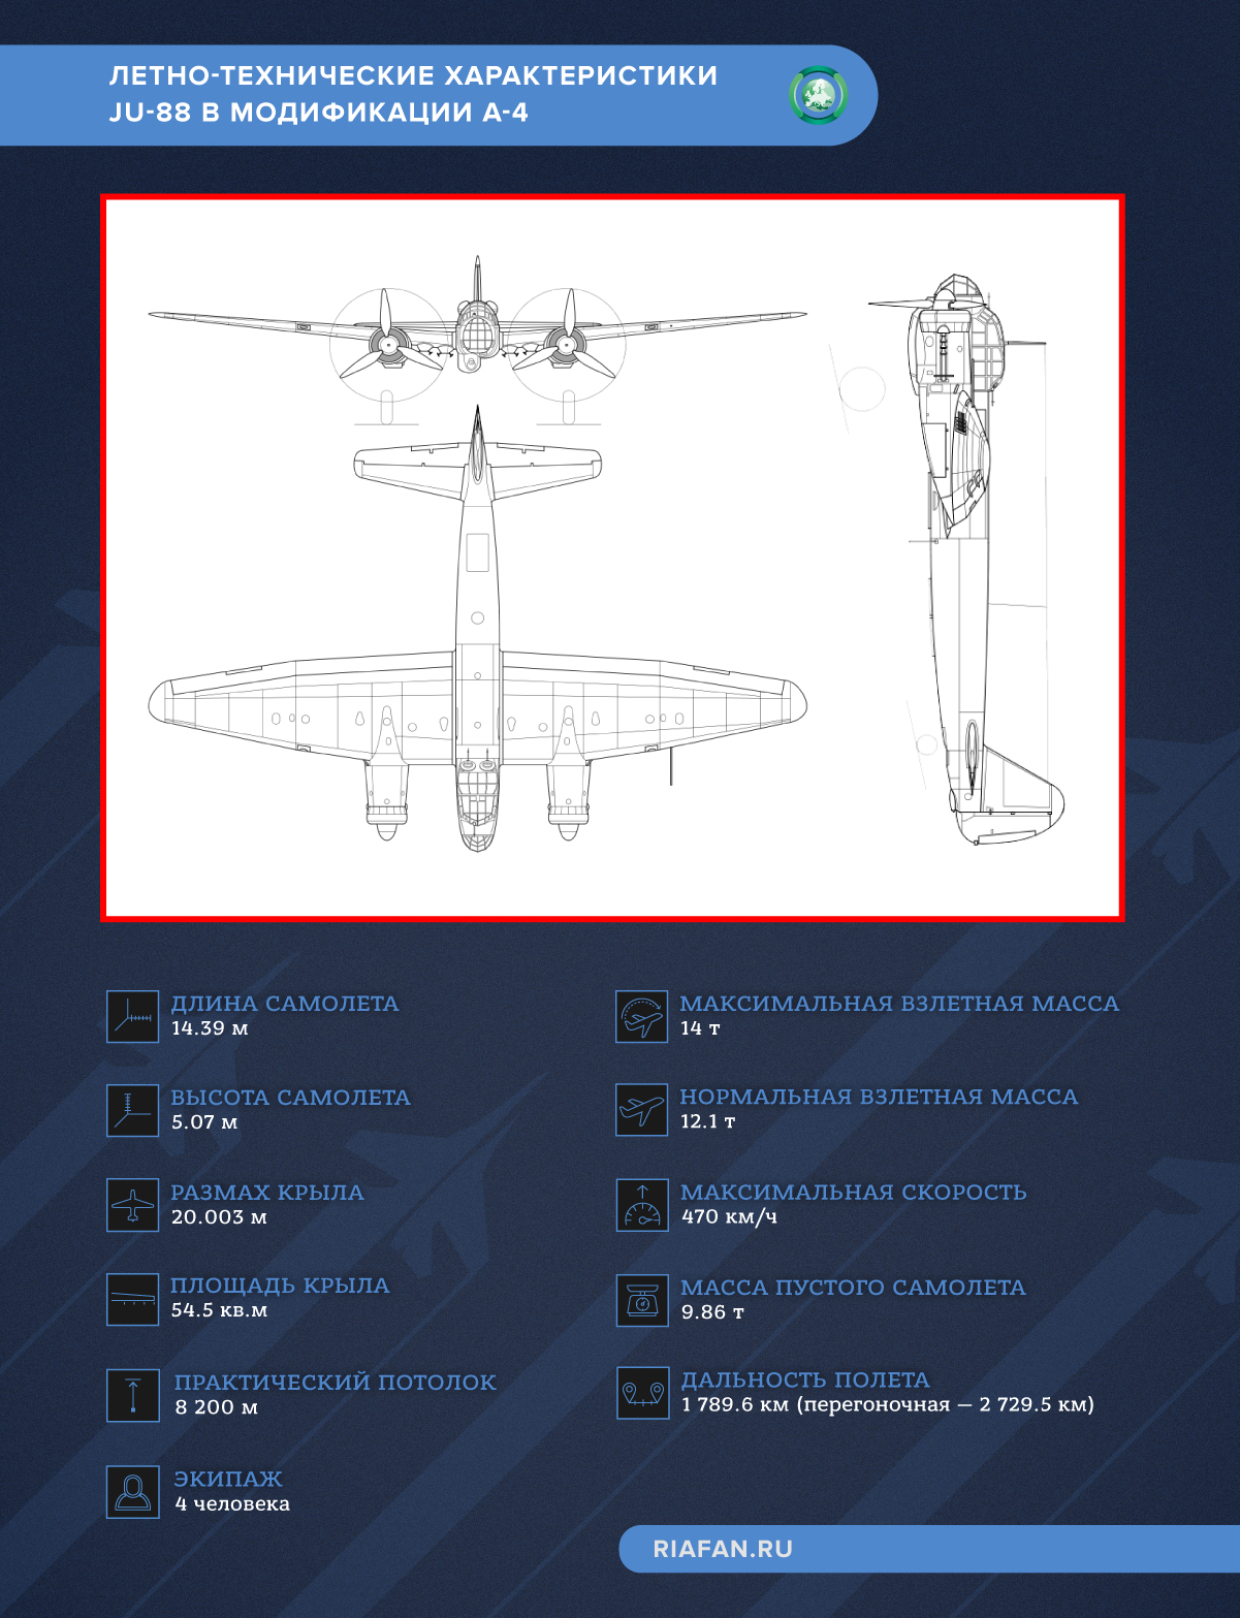 Летно-технические характеристики Ju-88 в модификации A-4